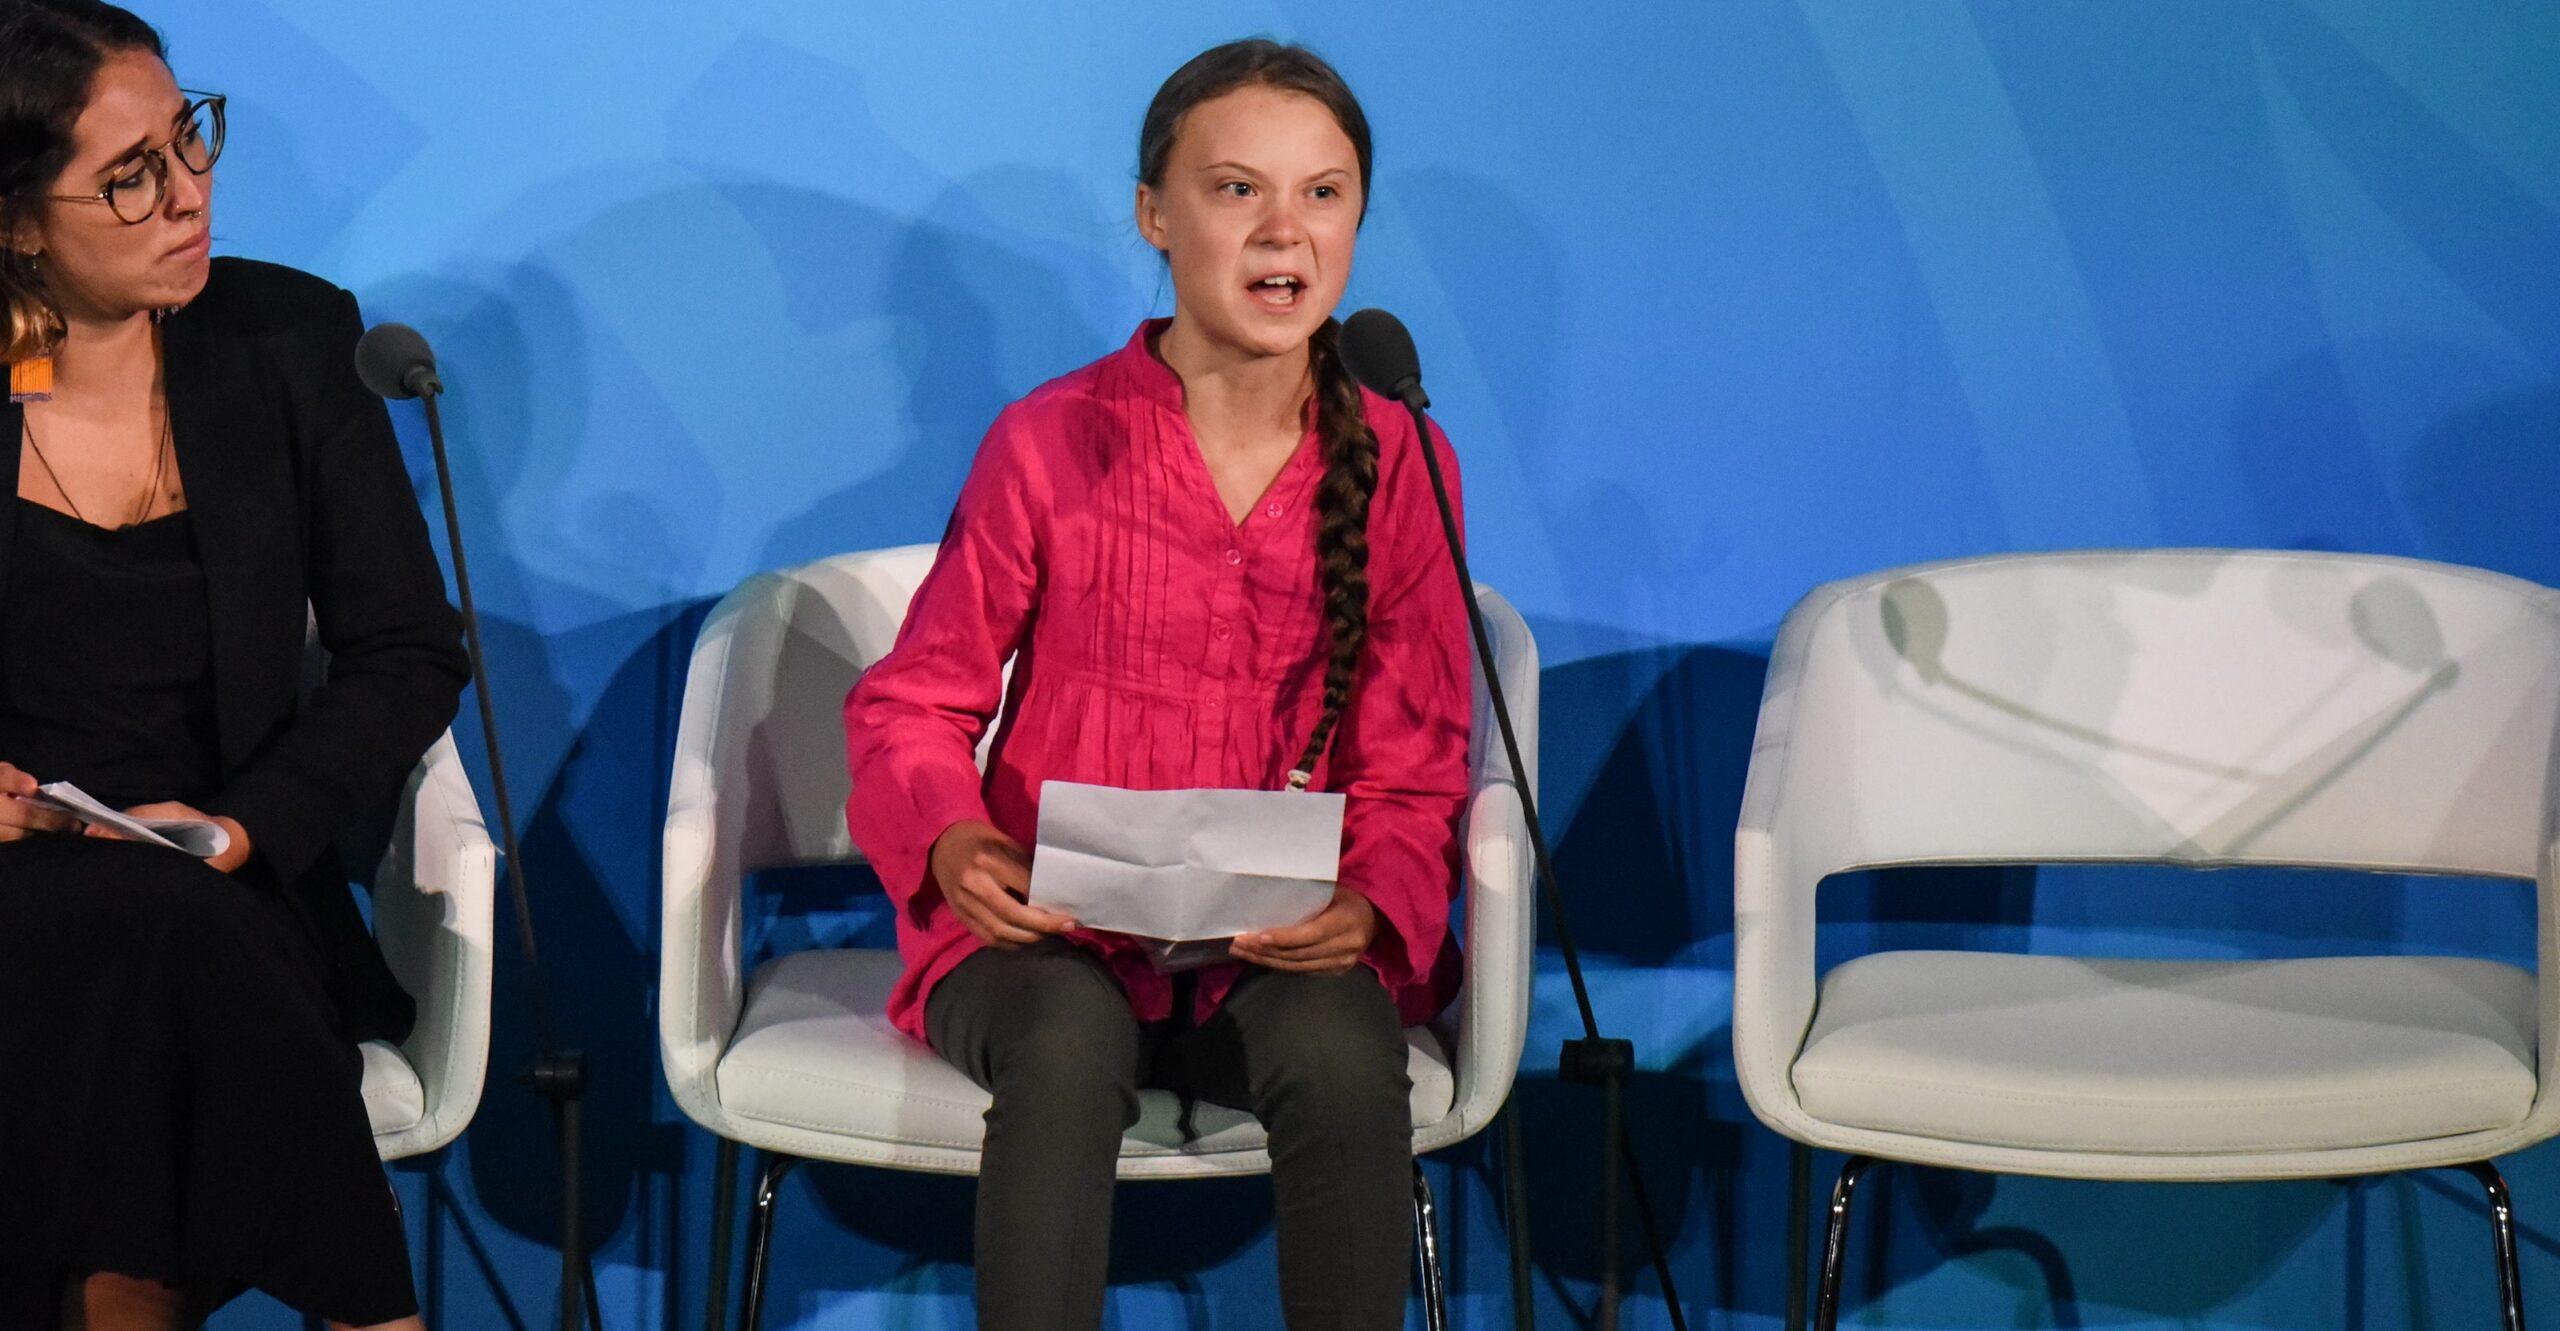 “Ecosistemas enteros están colapsando”: El discurso de Greta Thunberg en la Cumbre del Clima de la ONU